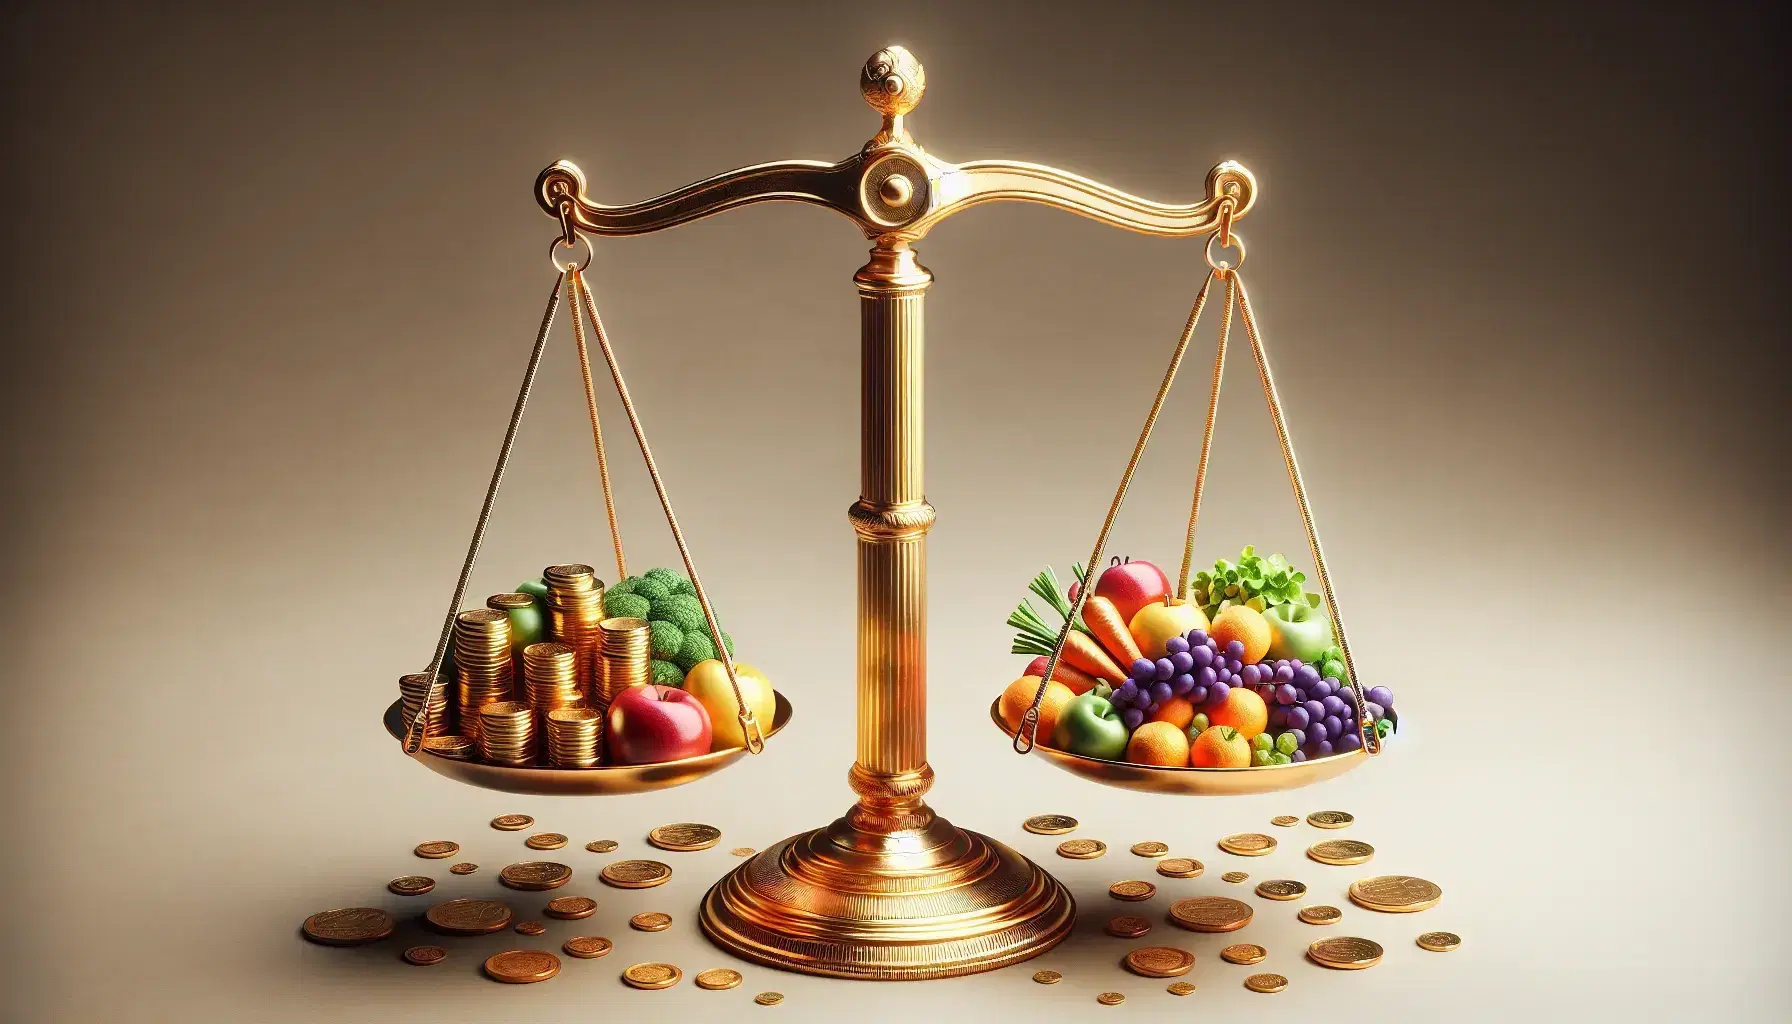 Balanza de dos platos en equilibrio con monedas variadas en uno y alimentos miniatura como manzana, uvas y zanahoria en el otro, sobre fondo neutro.